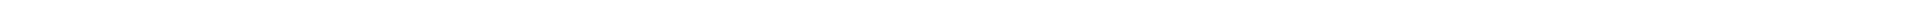 Элайнеры - цены на капы для выравнивания (исправления) прикуса, цены в Астане (Нур-Султан), Алматы, Атырау, Усть-Каменогорск, Уральск, Кокшетау в Казахстане, фото 9